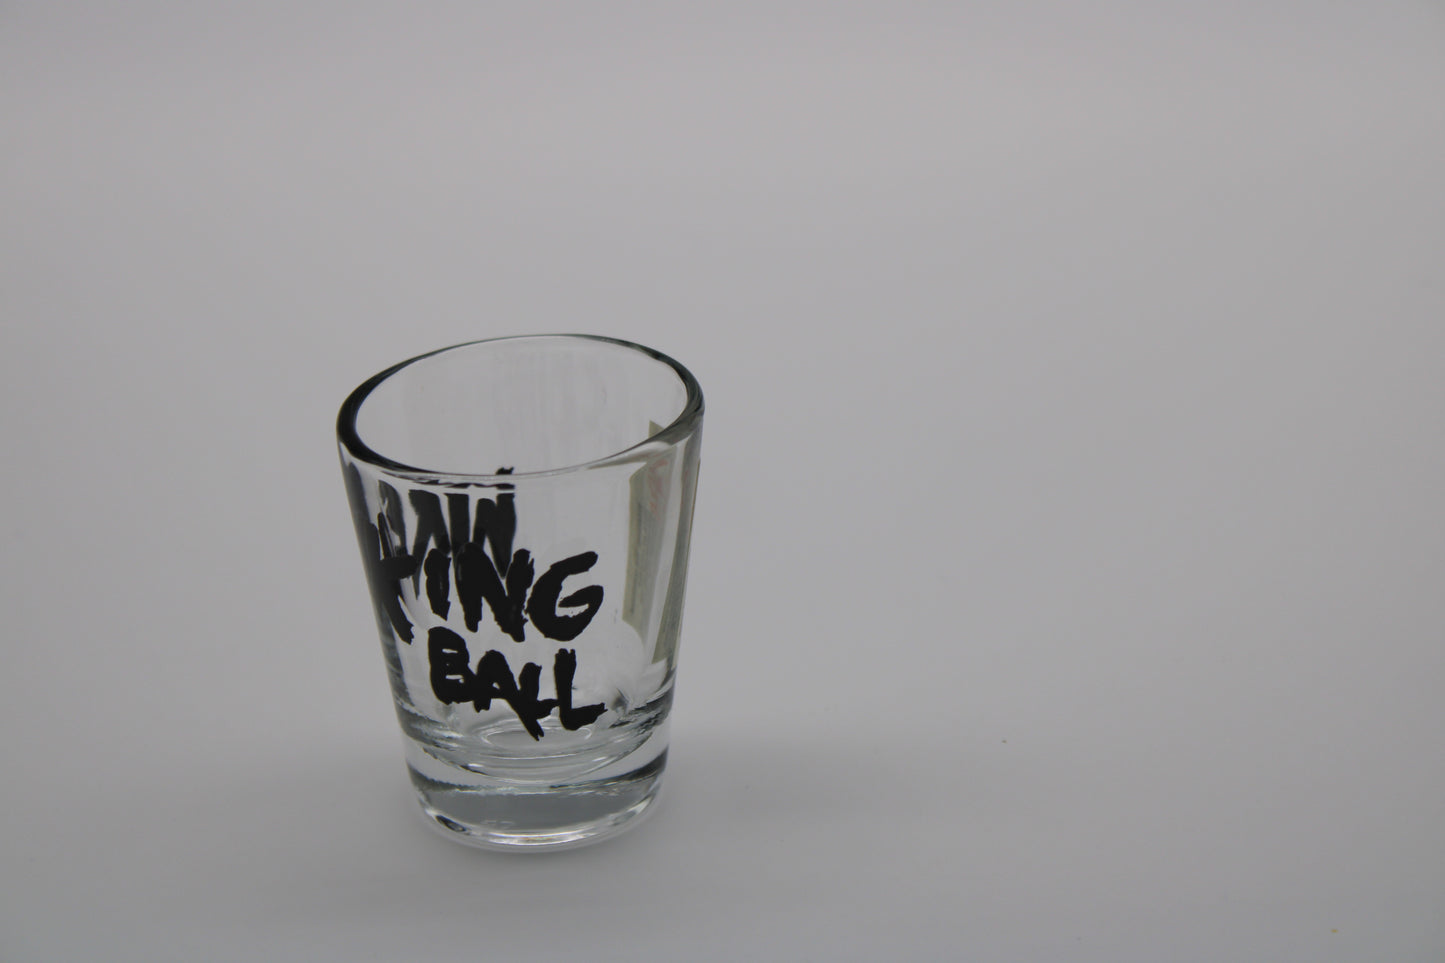 Bruce Springsteen - Wrecking Ball Concert Tour Original Shot Glass